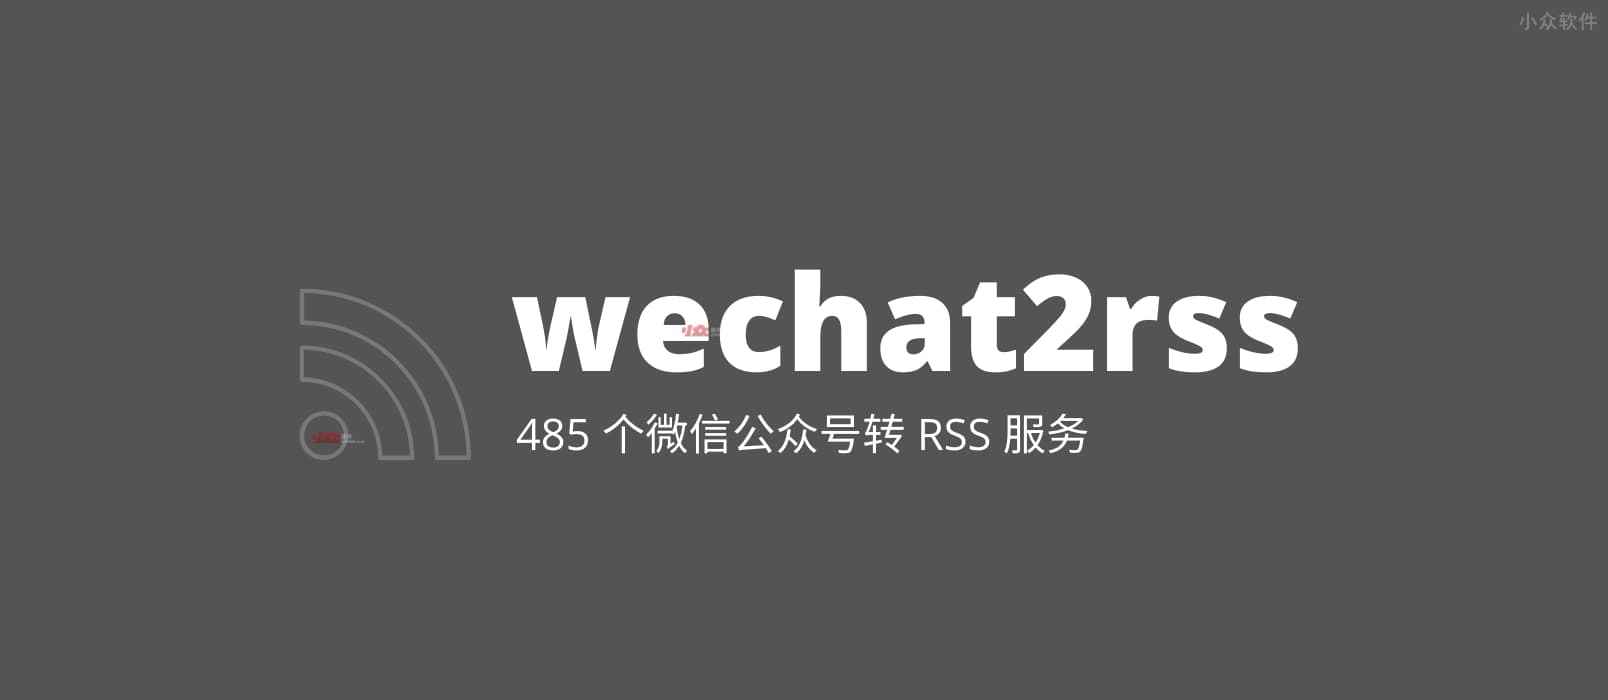 wechat2rss - 微信公众号转 RSS 服务，已支持 485 个公众号